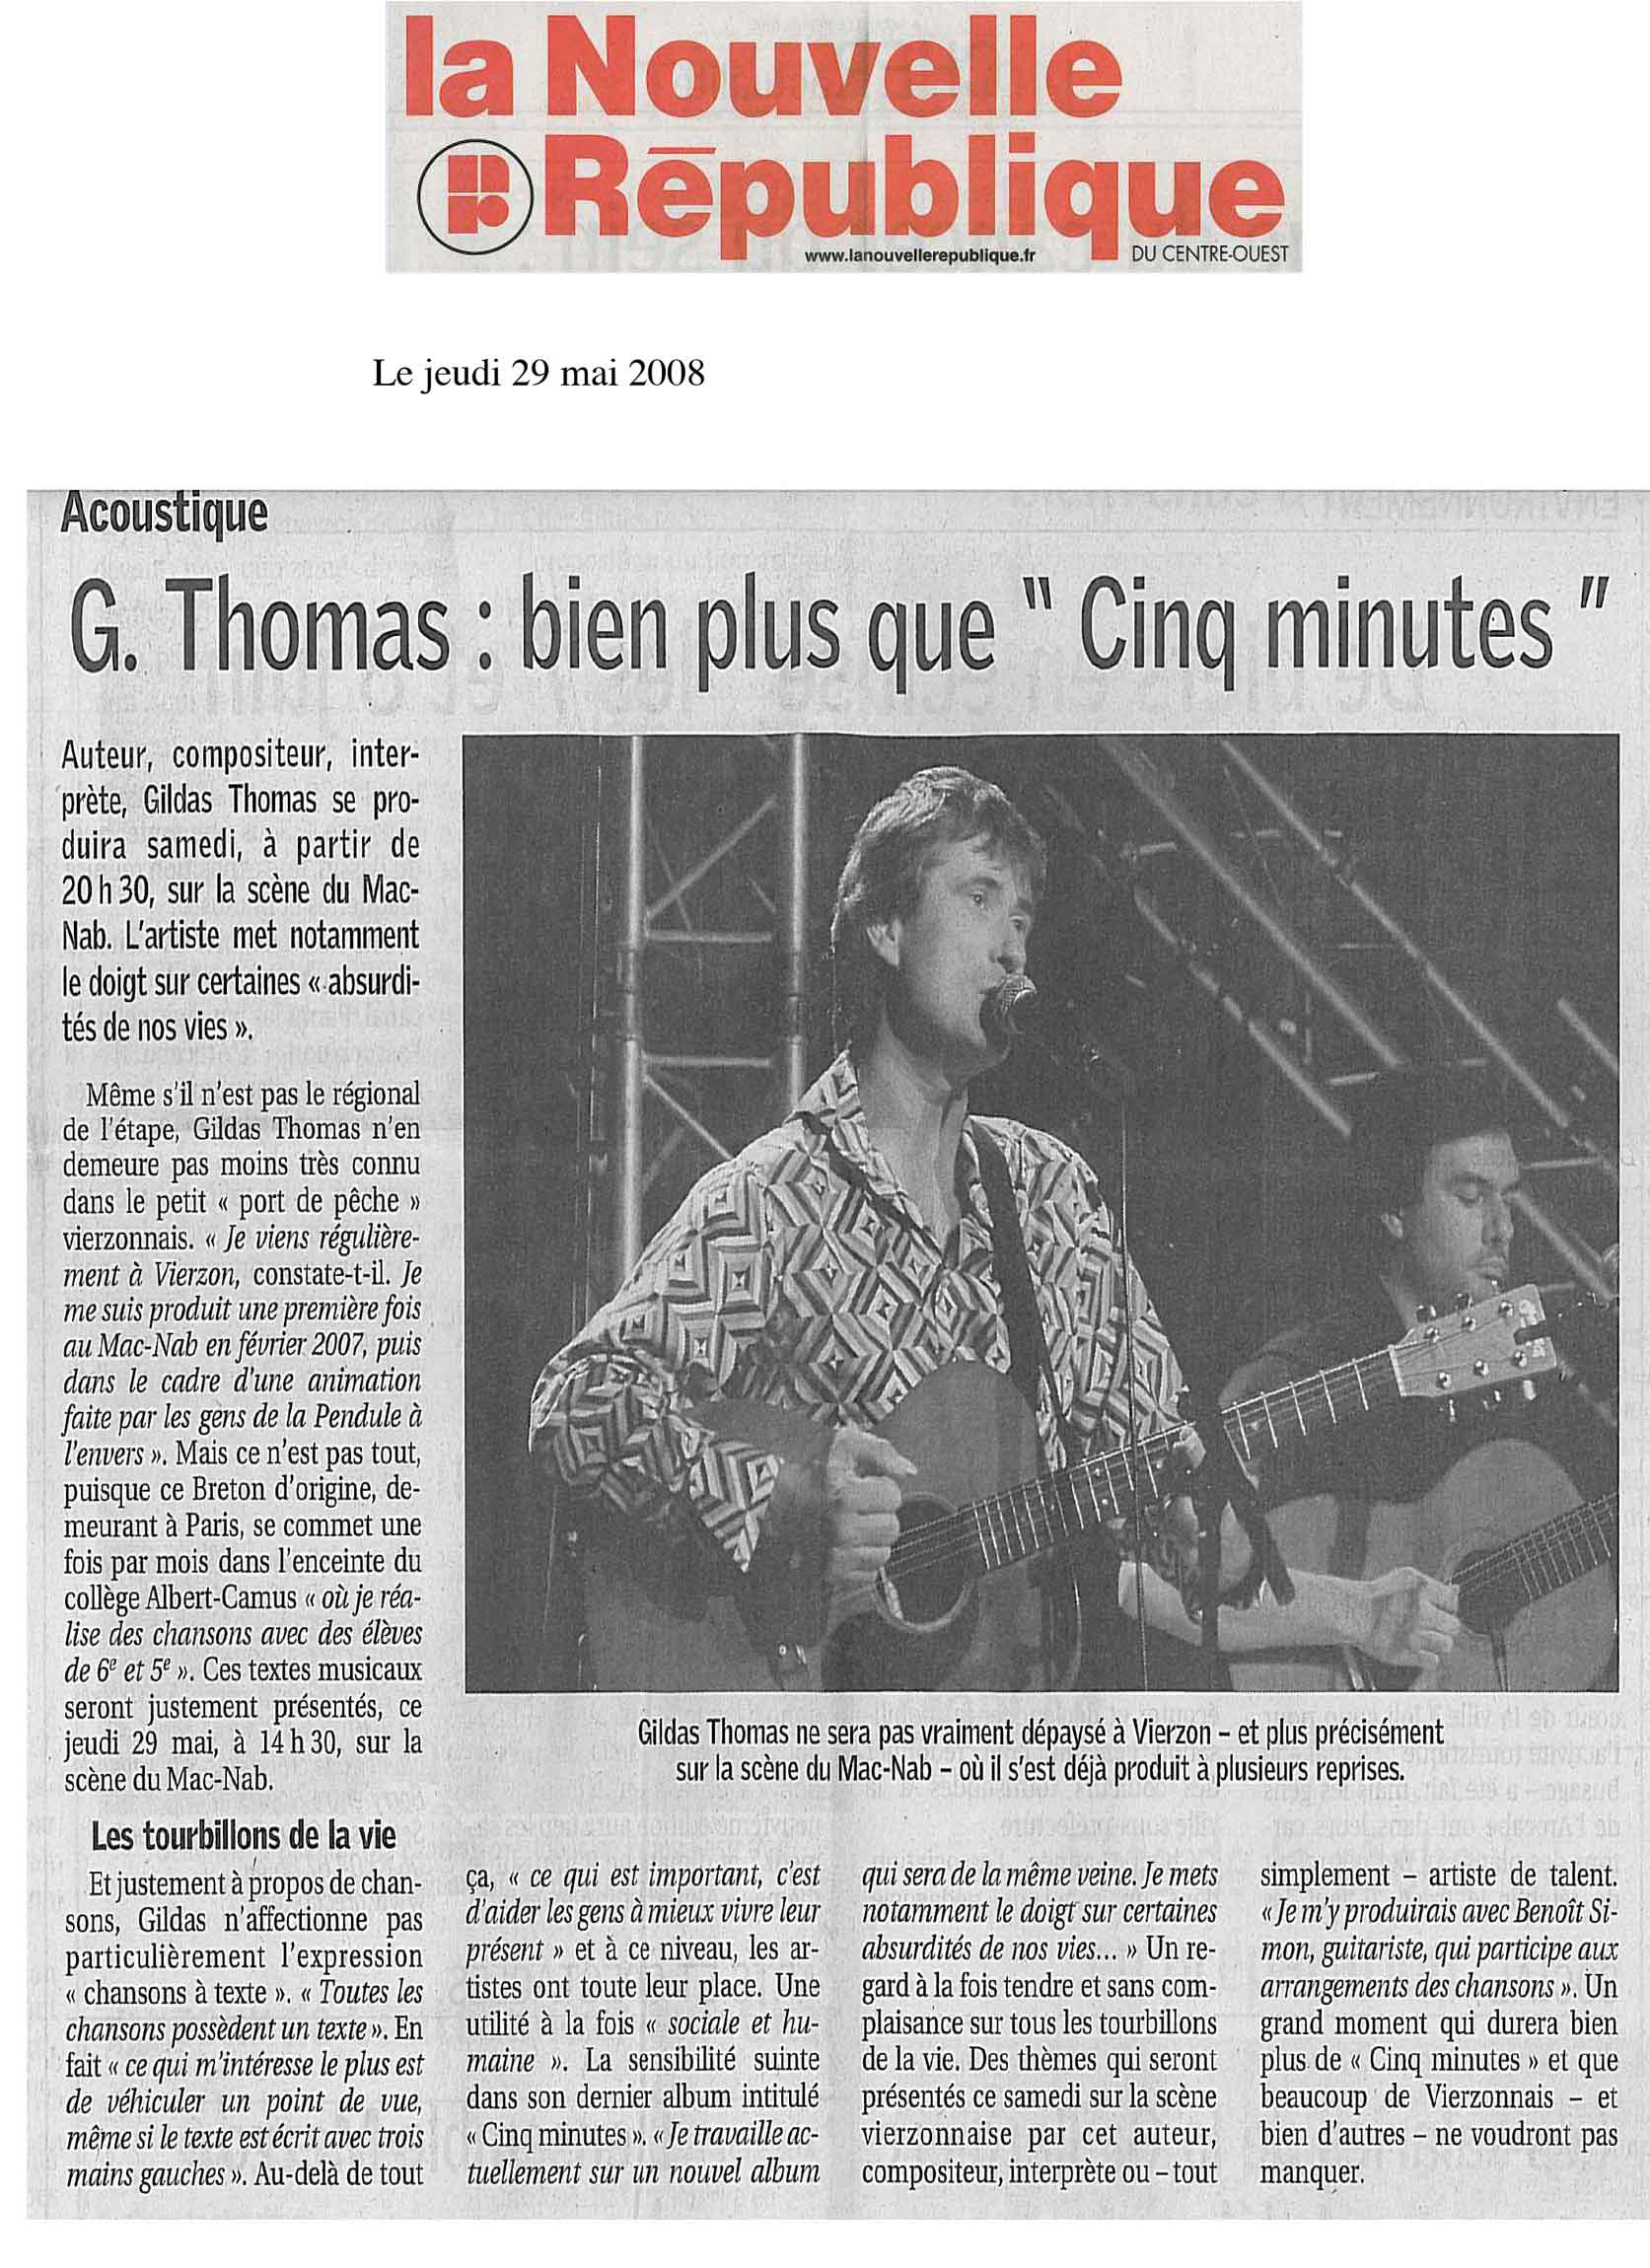 gildas-thomas-auteur-chanteur-compositeur-paris-visuels-articles-de-presse-11